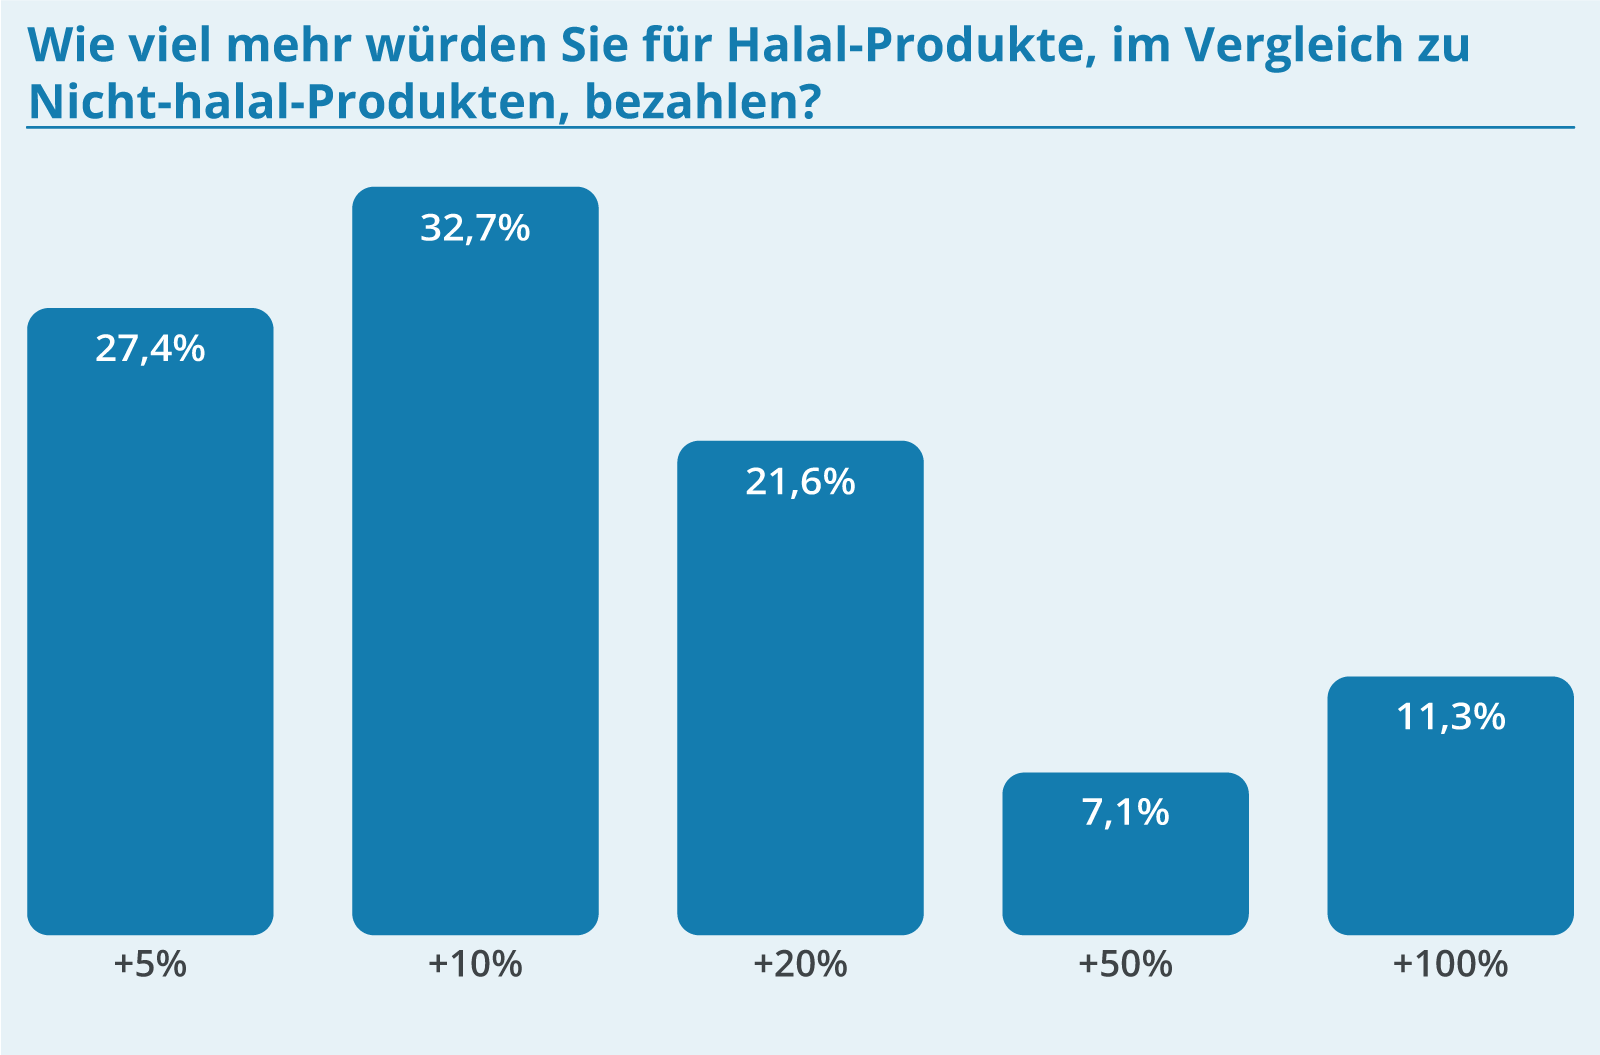 Halal-Logistik: Für vertrauenswürdige Halal-Produkte wären viele bereit, einen Aufpreis zu zahlen